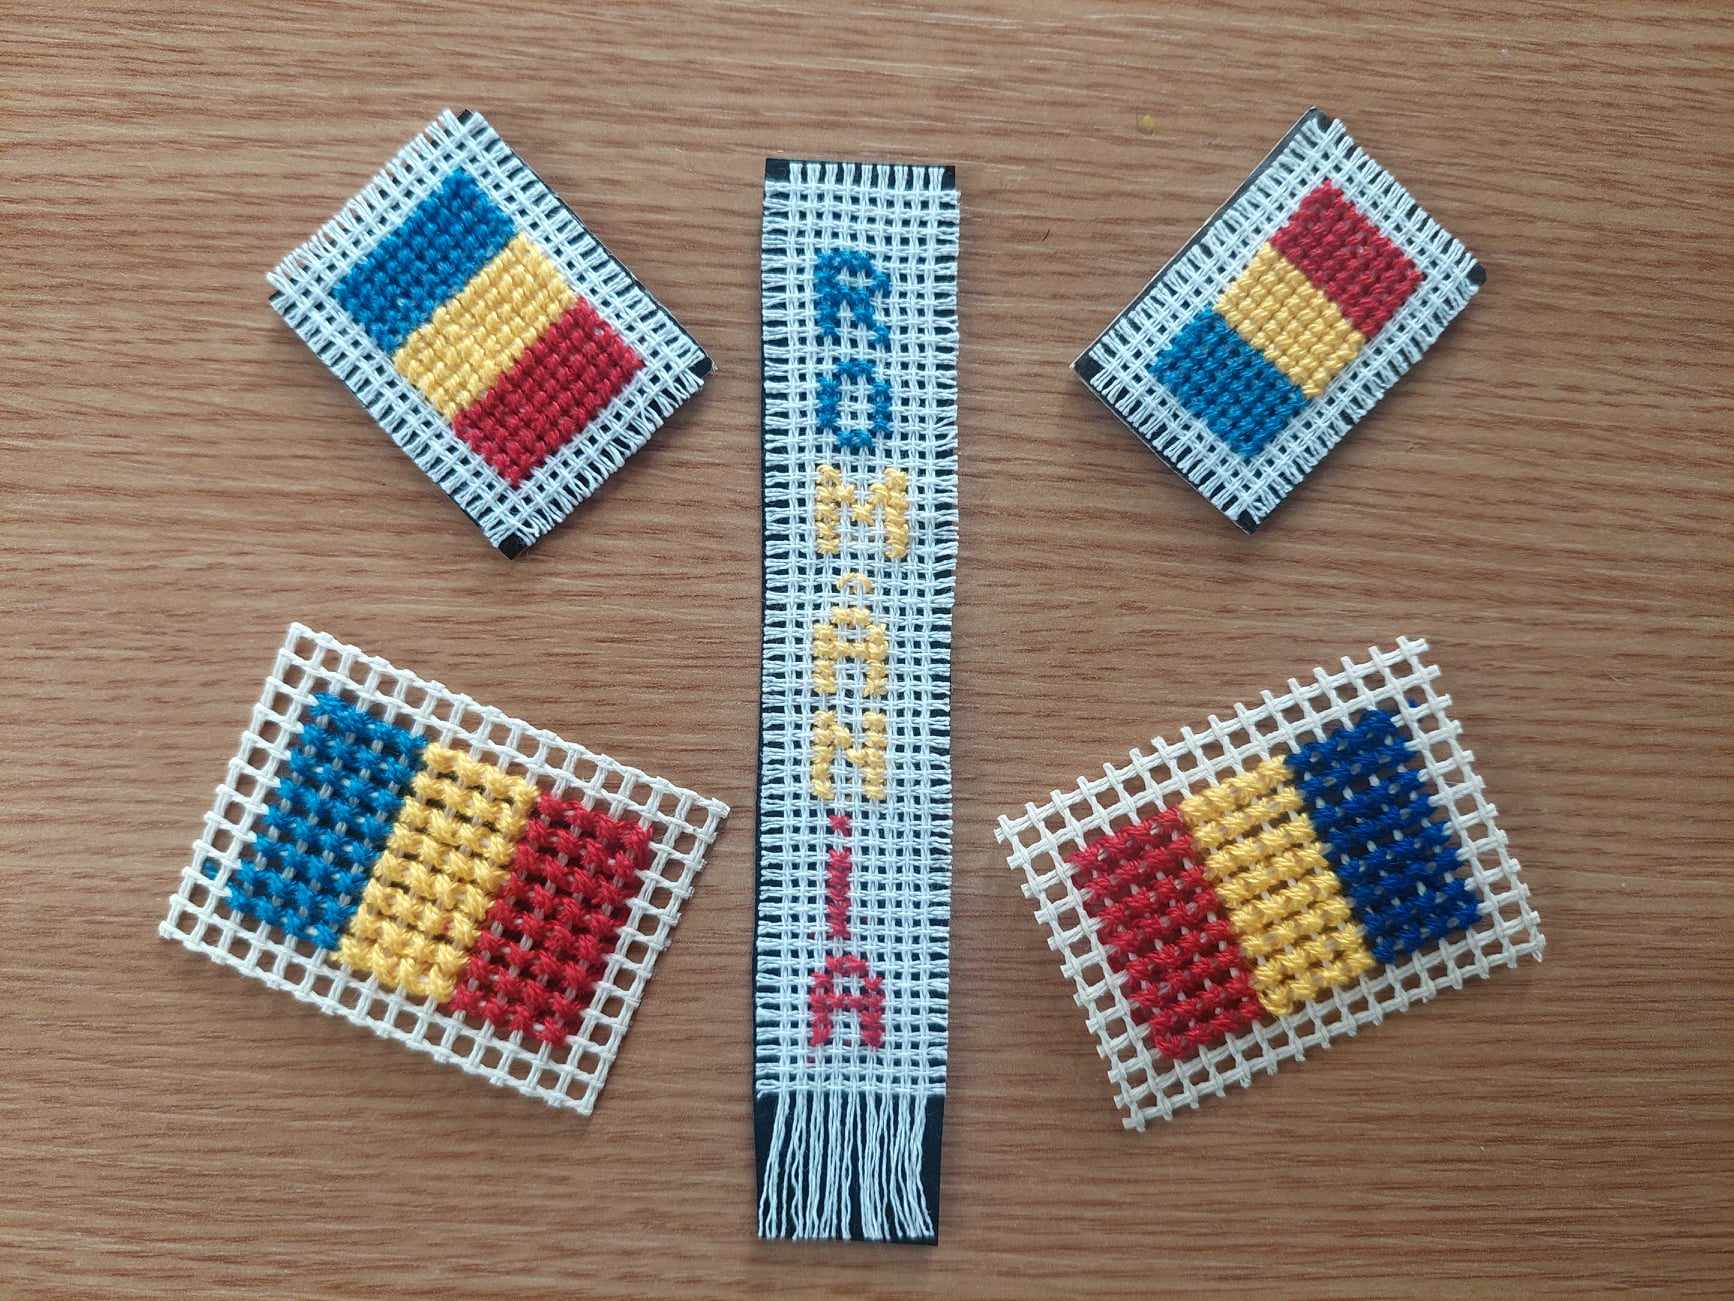 De Ziua Națională a României, brodăm tricolorul în punct românesc! - 40492199582763692916529245099281-1700659692.jpg